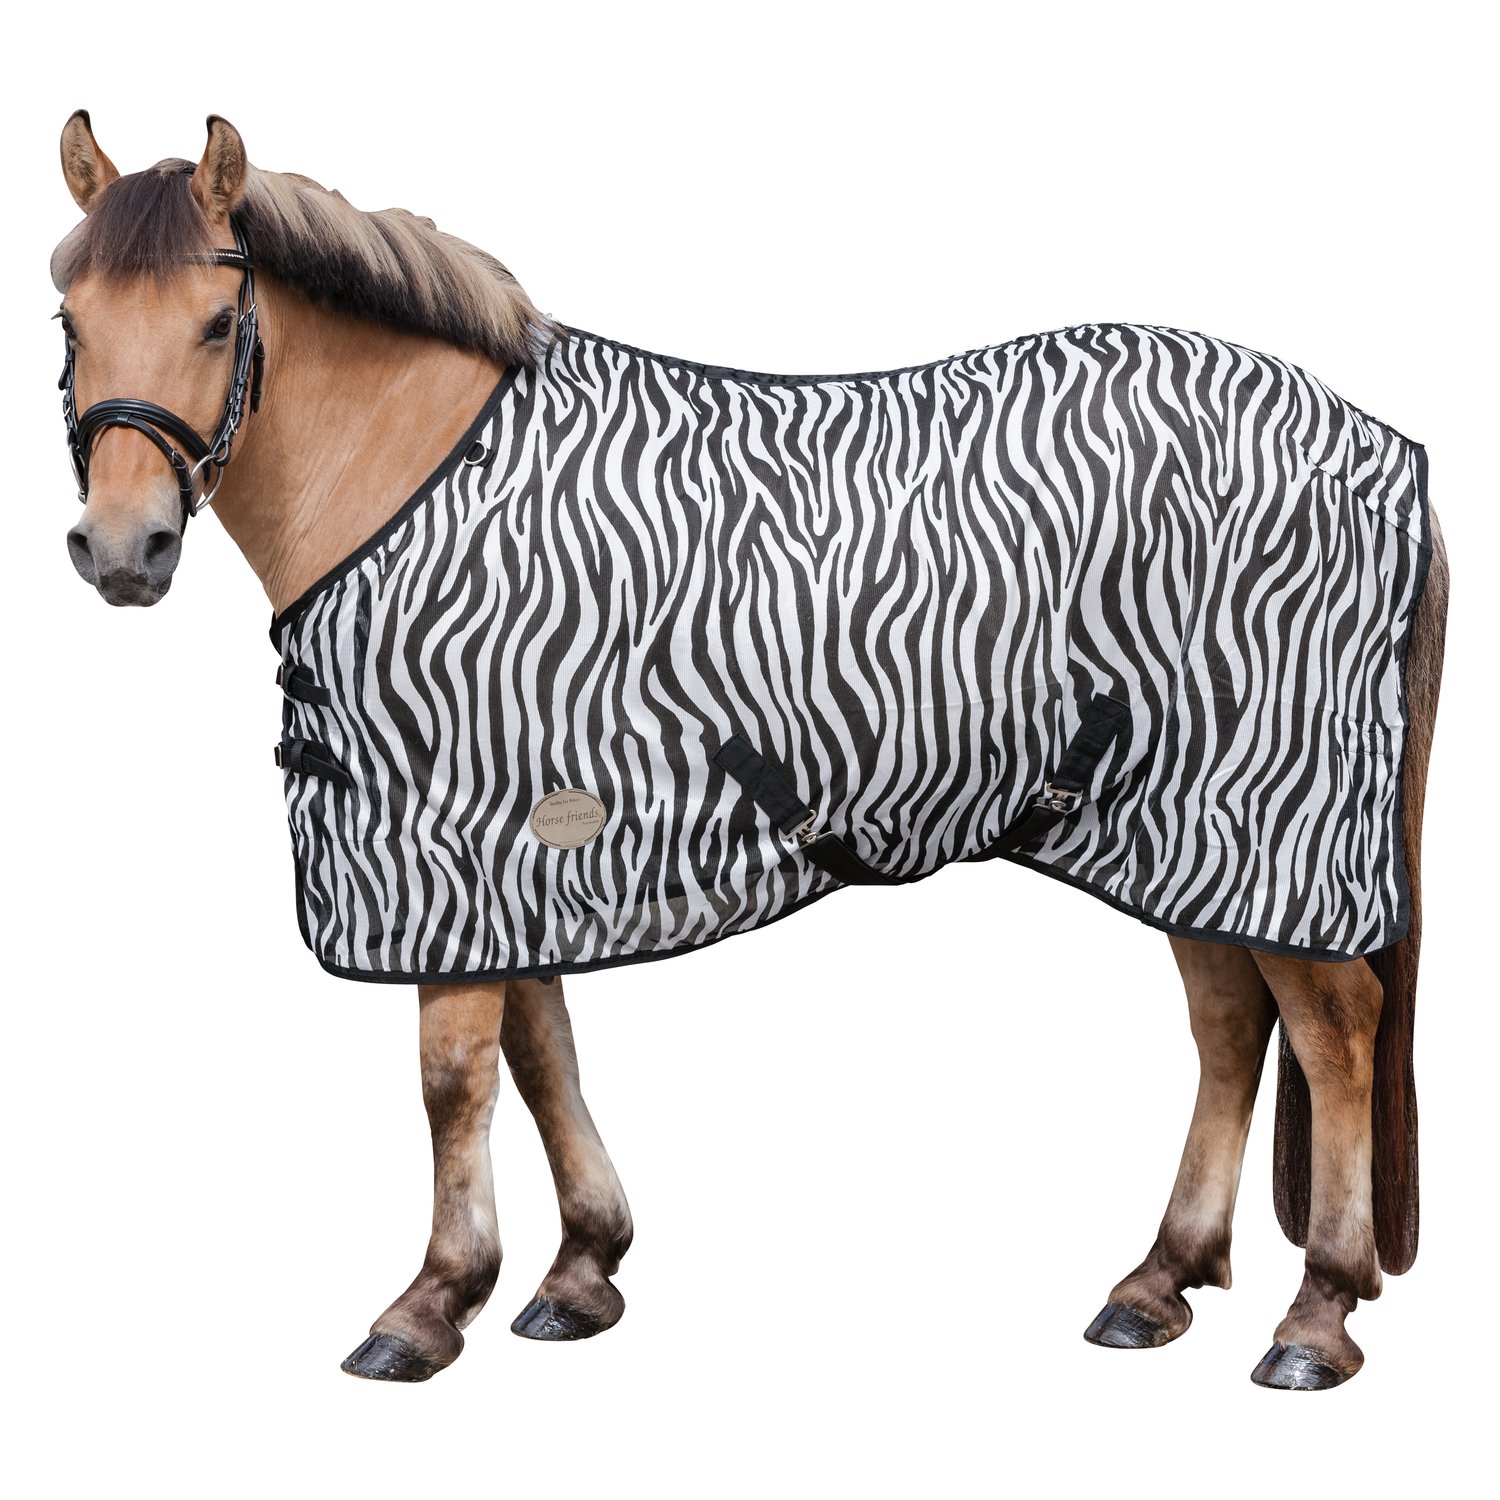 Horse-friends Fliegendecke mit Zebra-Muster zebra | 145 cm